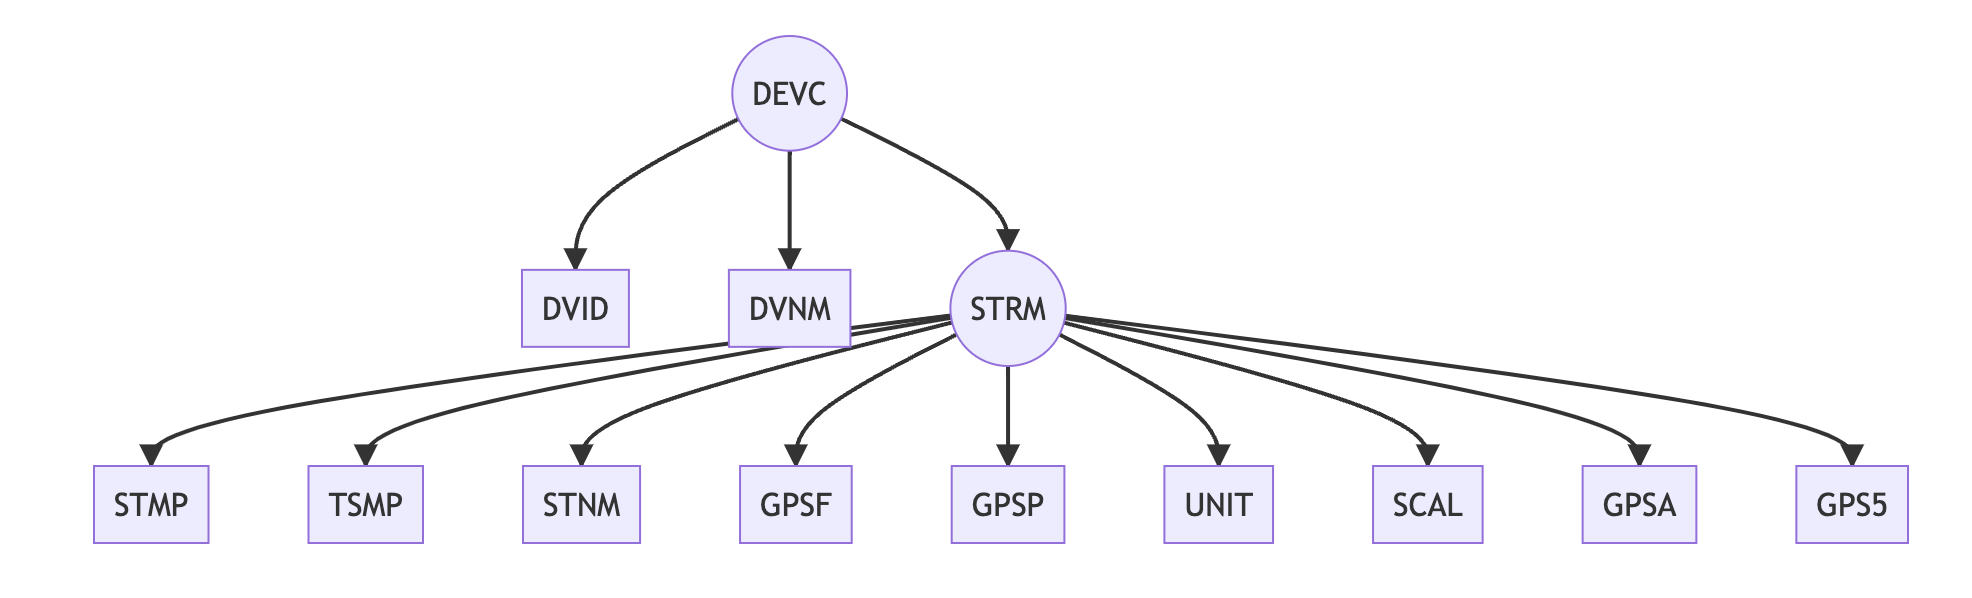 GoPro MAX GPMF DEVC tree